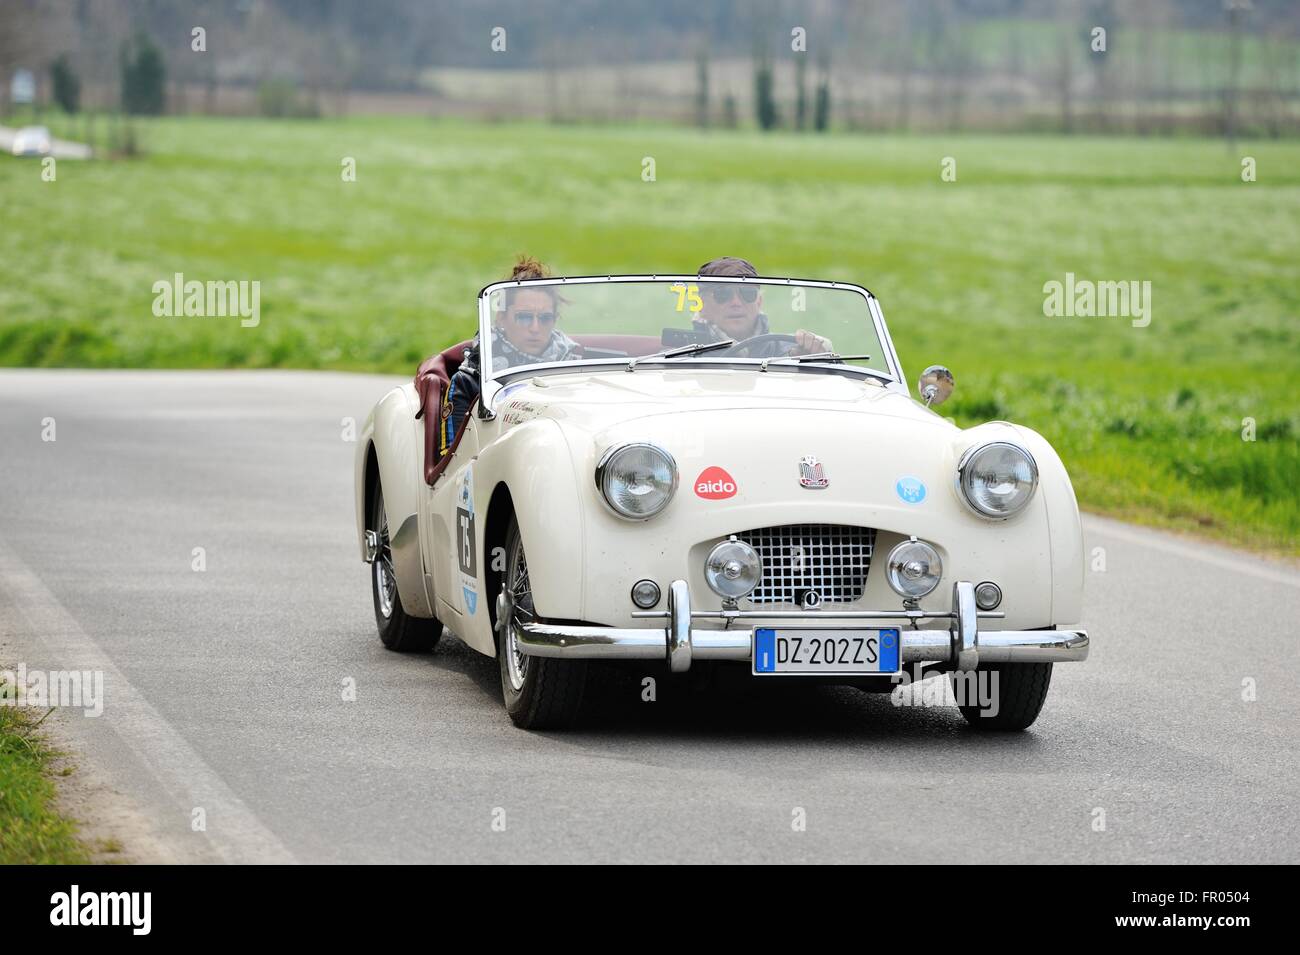 A Lonato, Italia. Xix marzo, 2016. Una crema 1955 Triumph TR2 partecipa al Trofeo Foresti. Roberto Cerruti/Alamy Live News Foto Stock